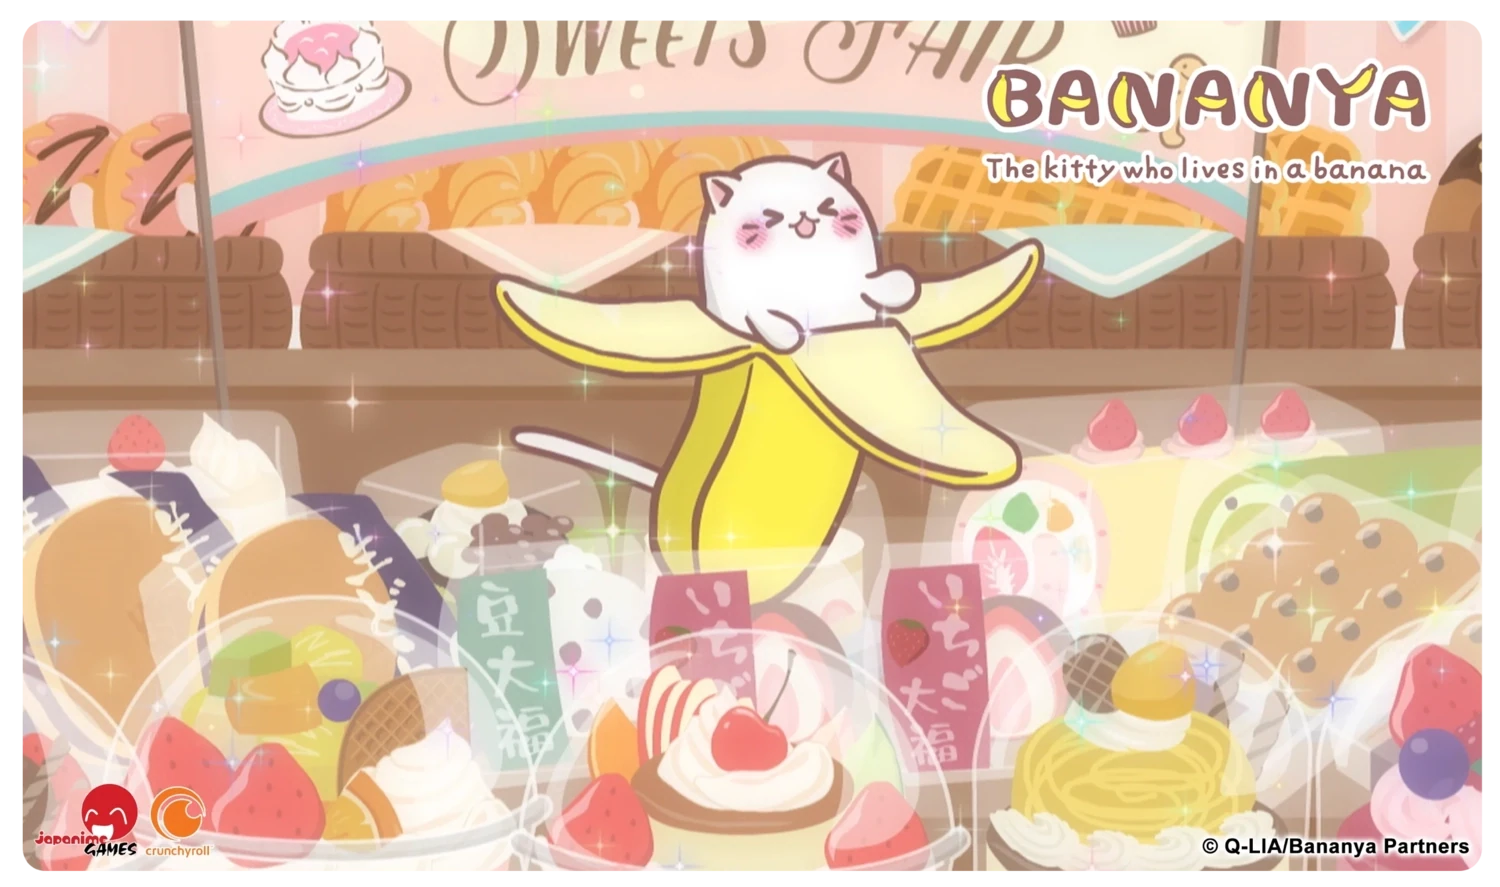 Bananya Playmat - Sweets Shoppe